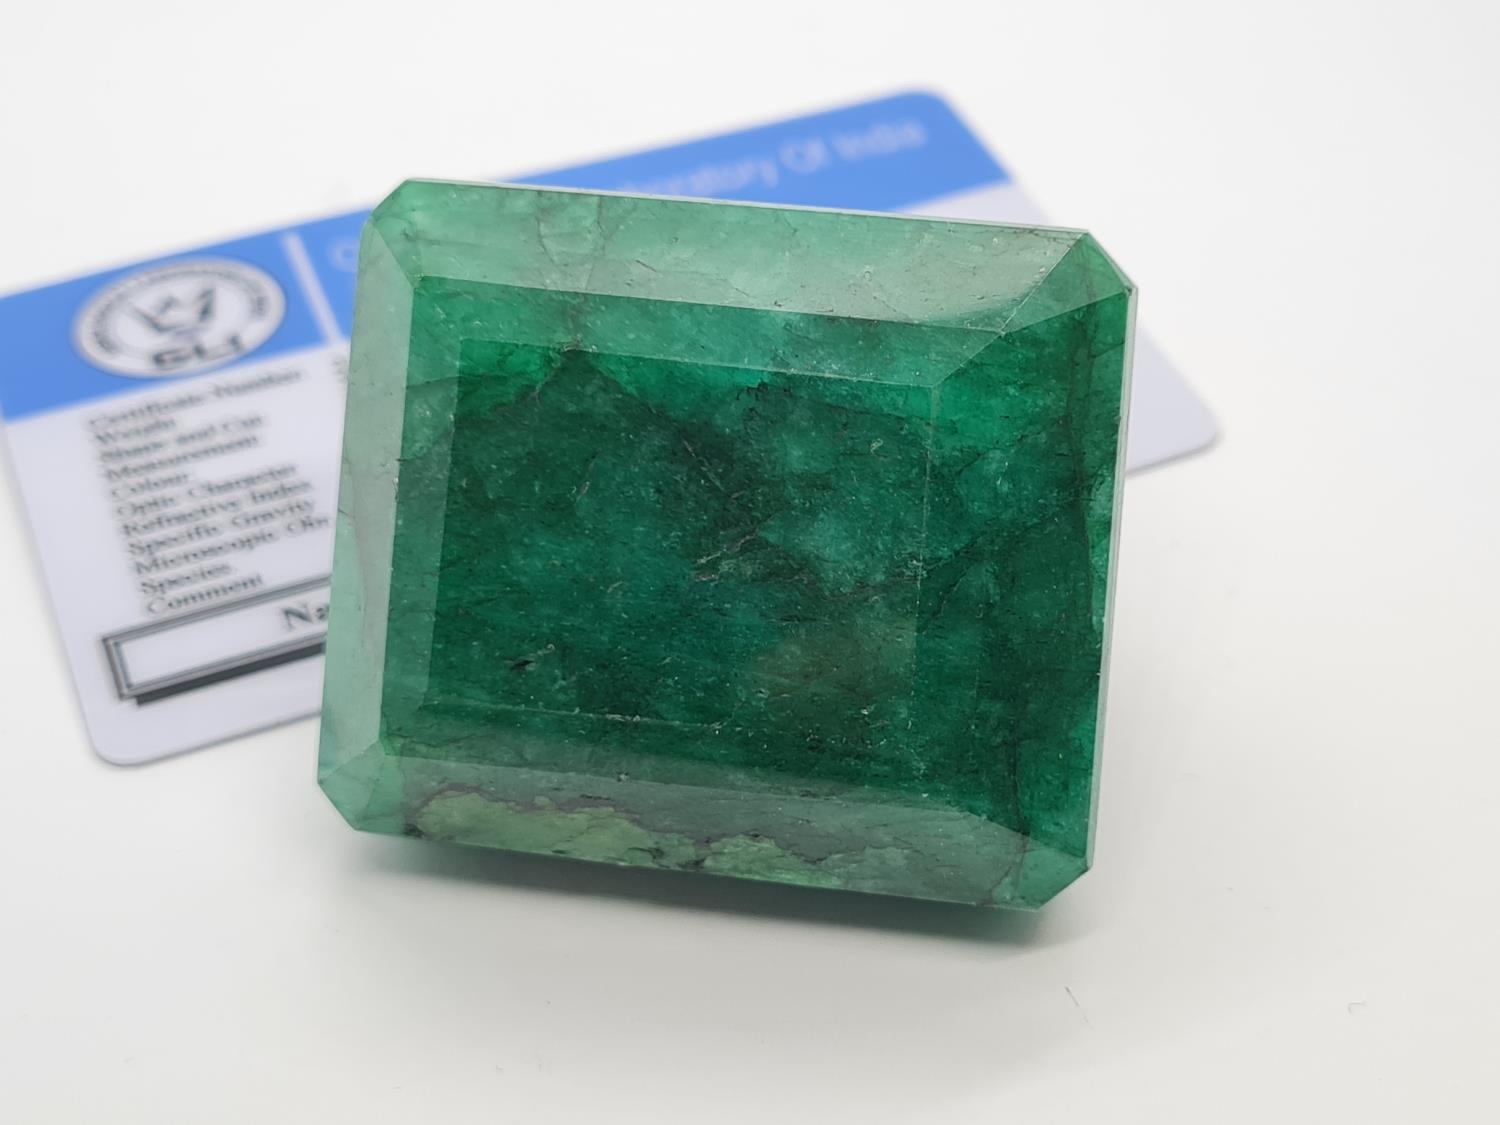 599ct Rectangular shaped emerald gemstone - Image 4 of 5